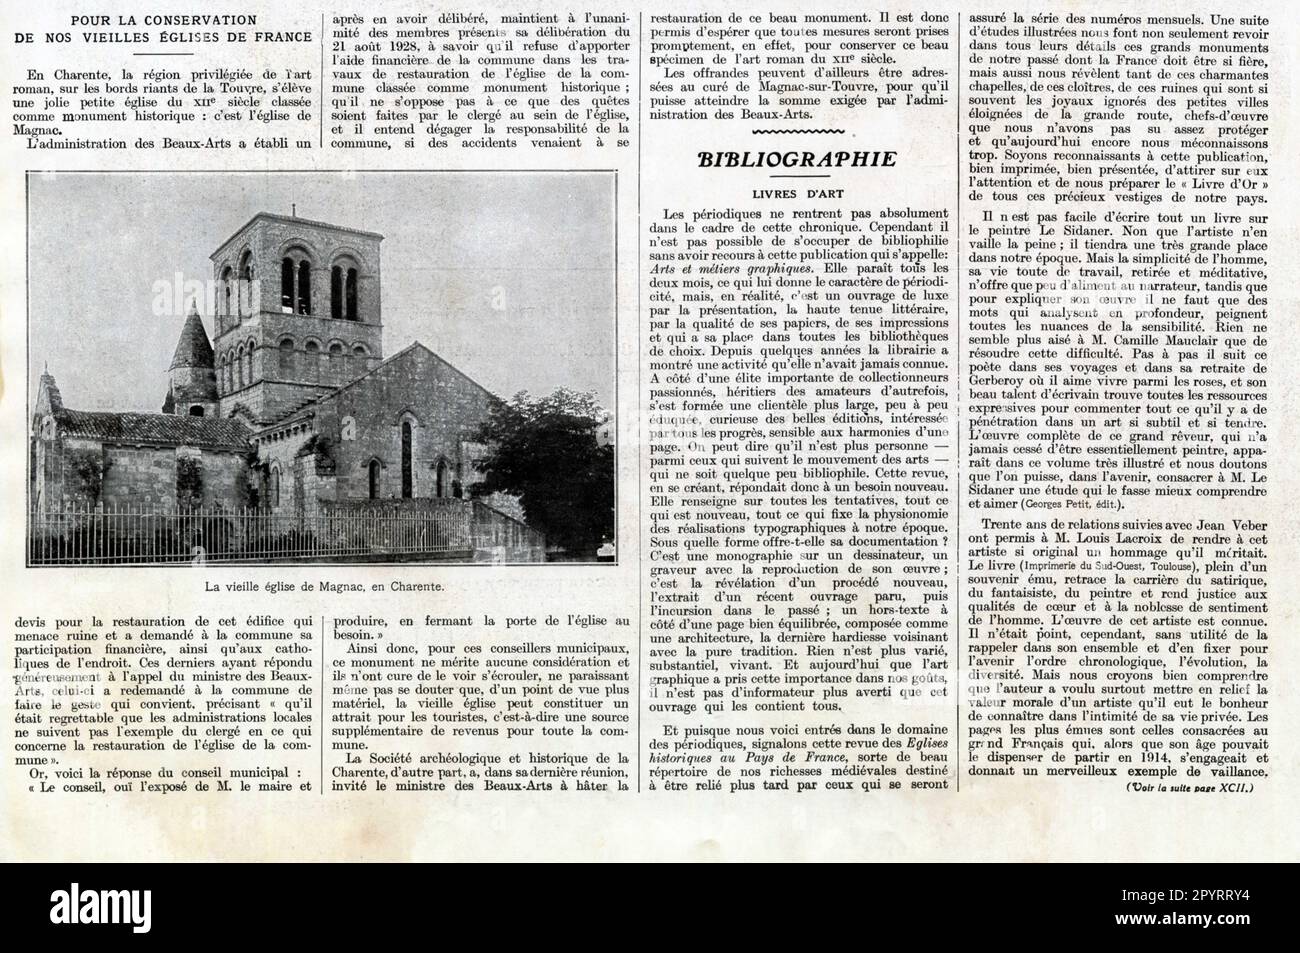 Article de presse POUR LA CONSERVATION DE NOS VIEILLES ÉGLISES DE FRANCE. 1929 Stock Photo